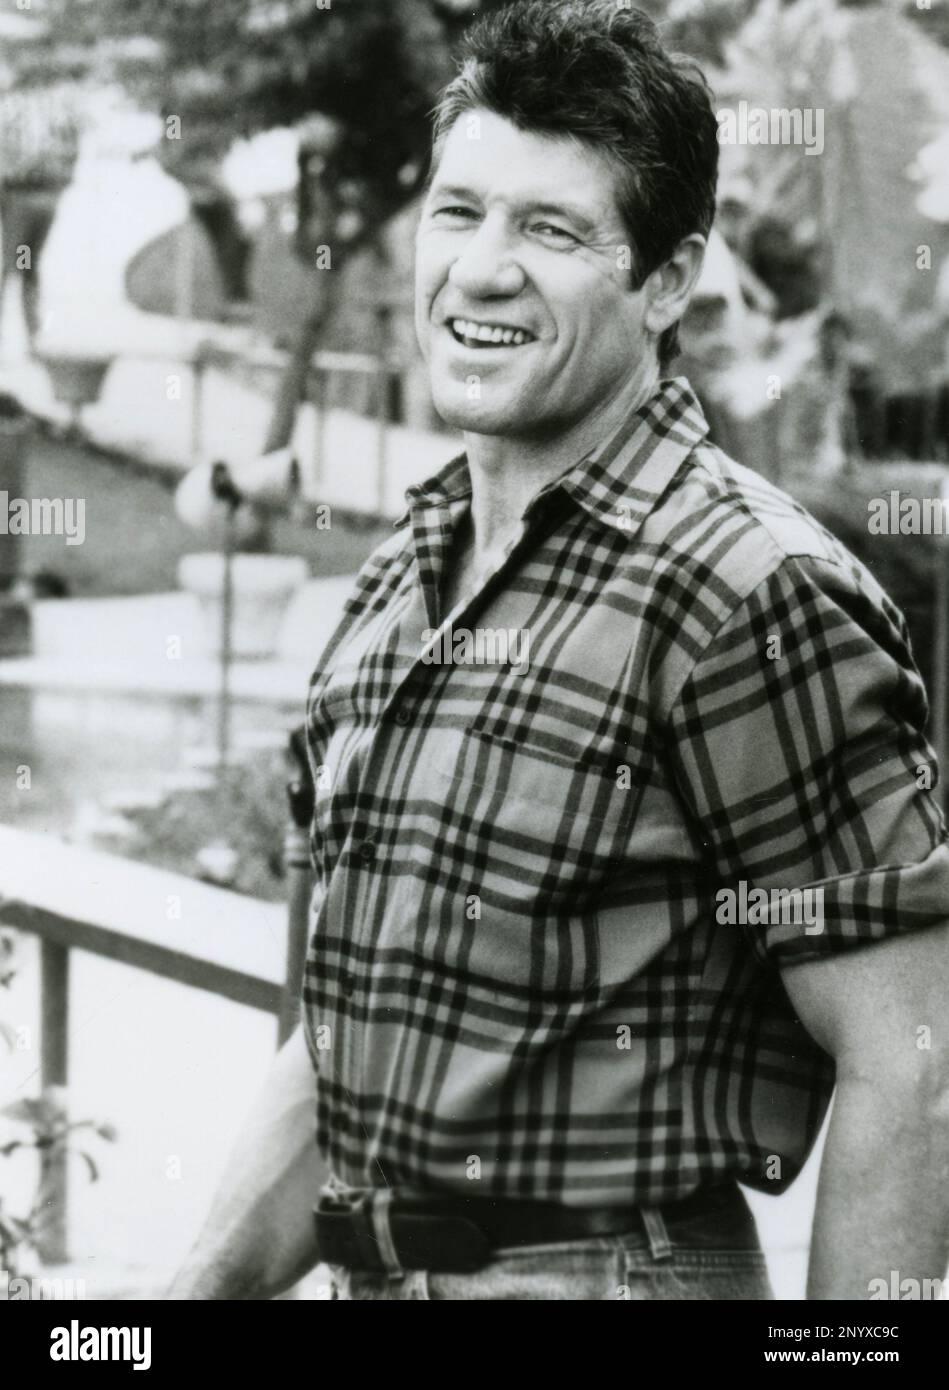 Acteur Fred Ward dans le film Big Business, USA 1988 Banque D'Images